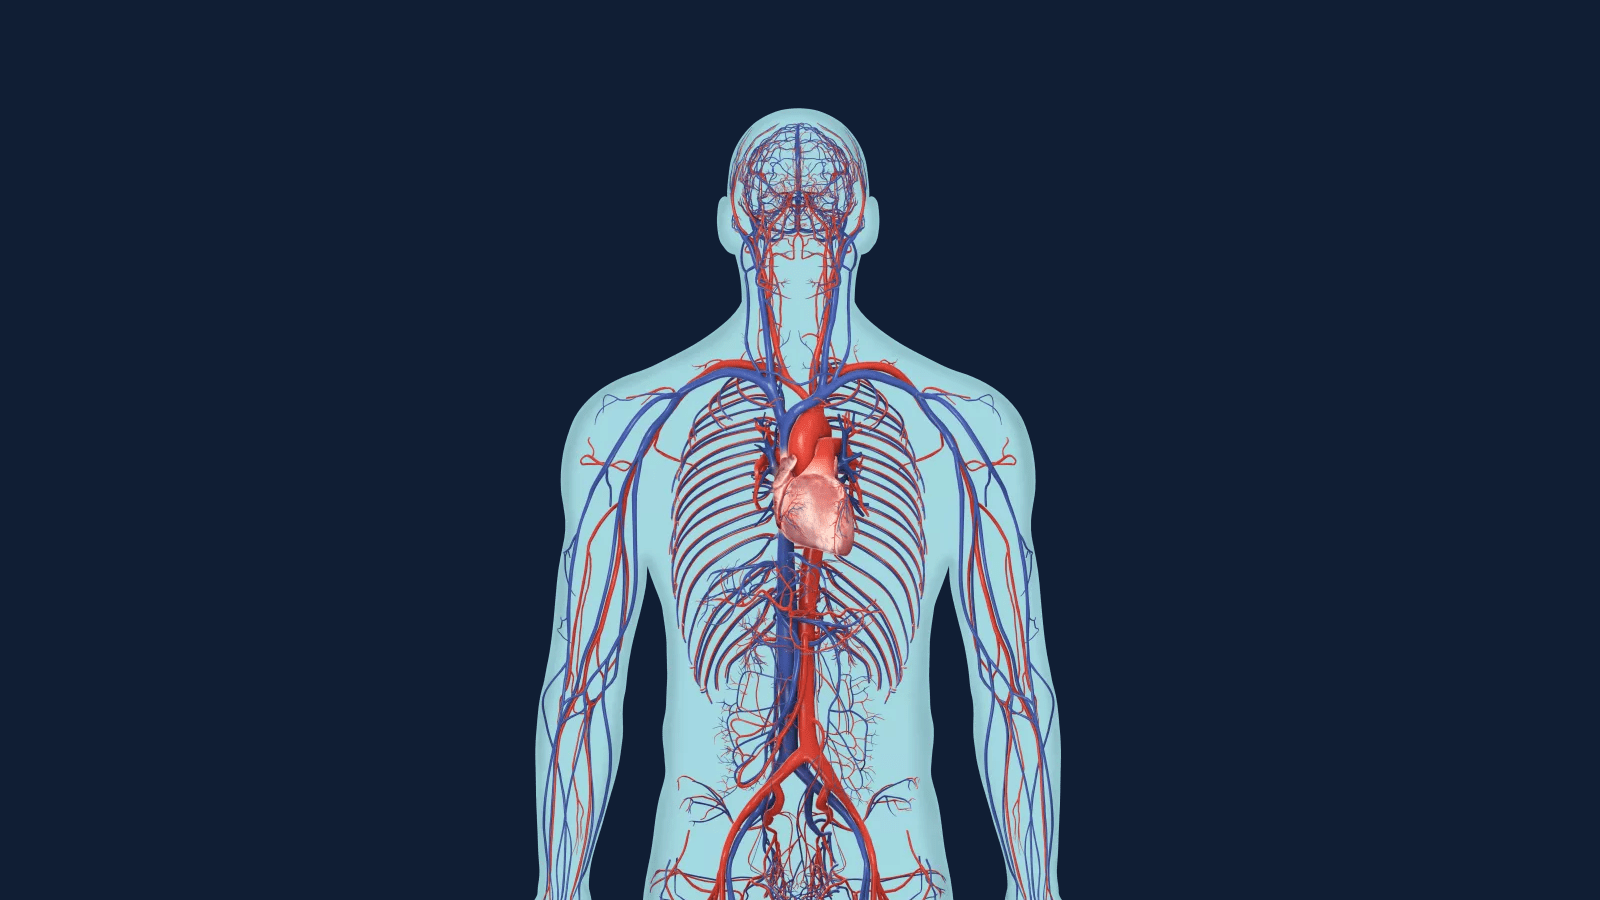 심장에서 혈관을 통해 몸 전체에 영양분을 전달하는 시스템이 만들어집니다.